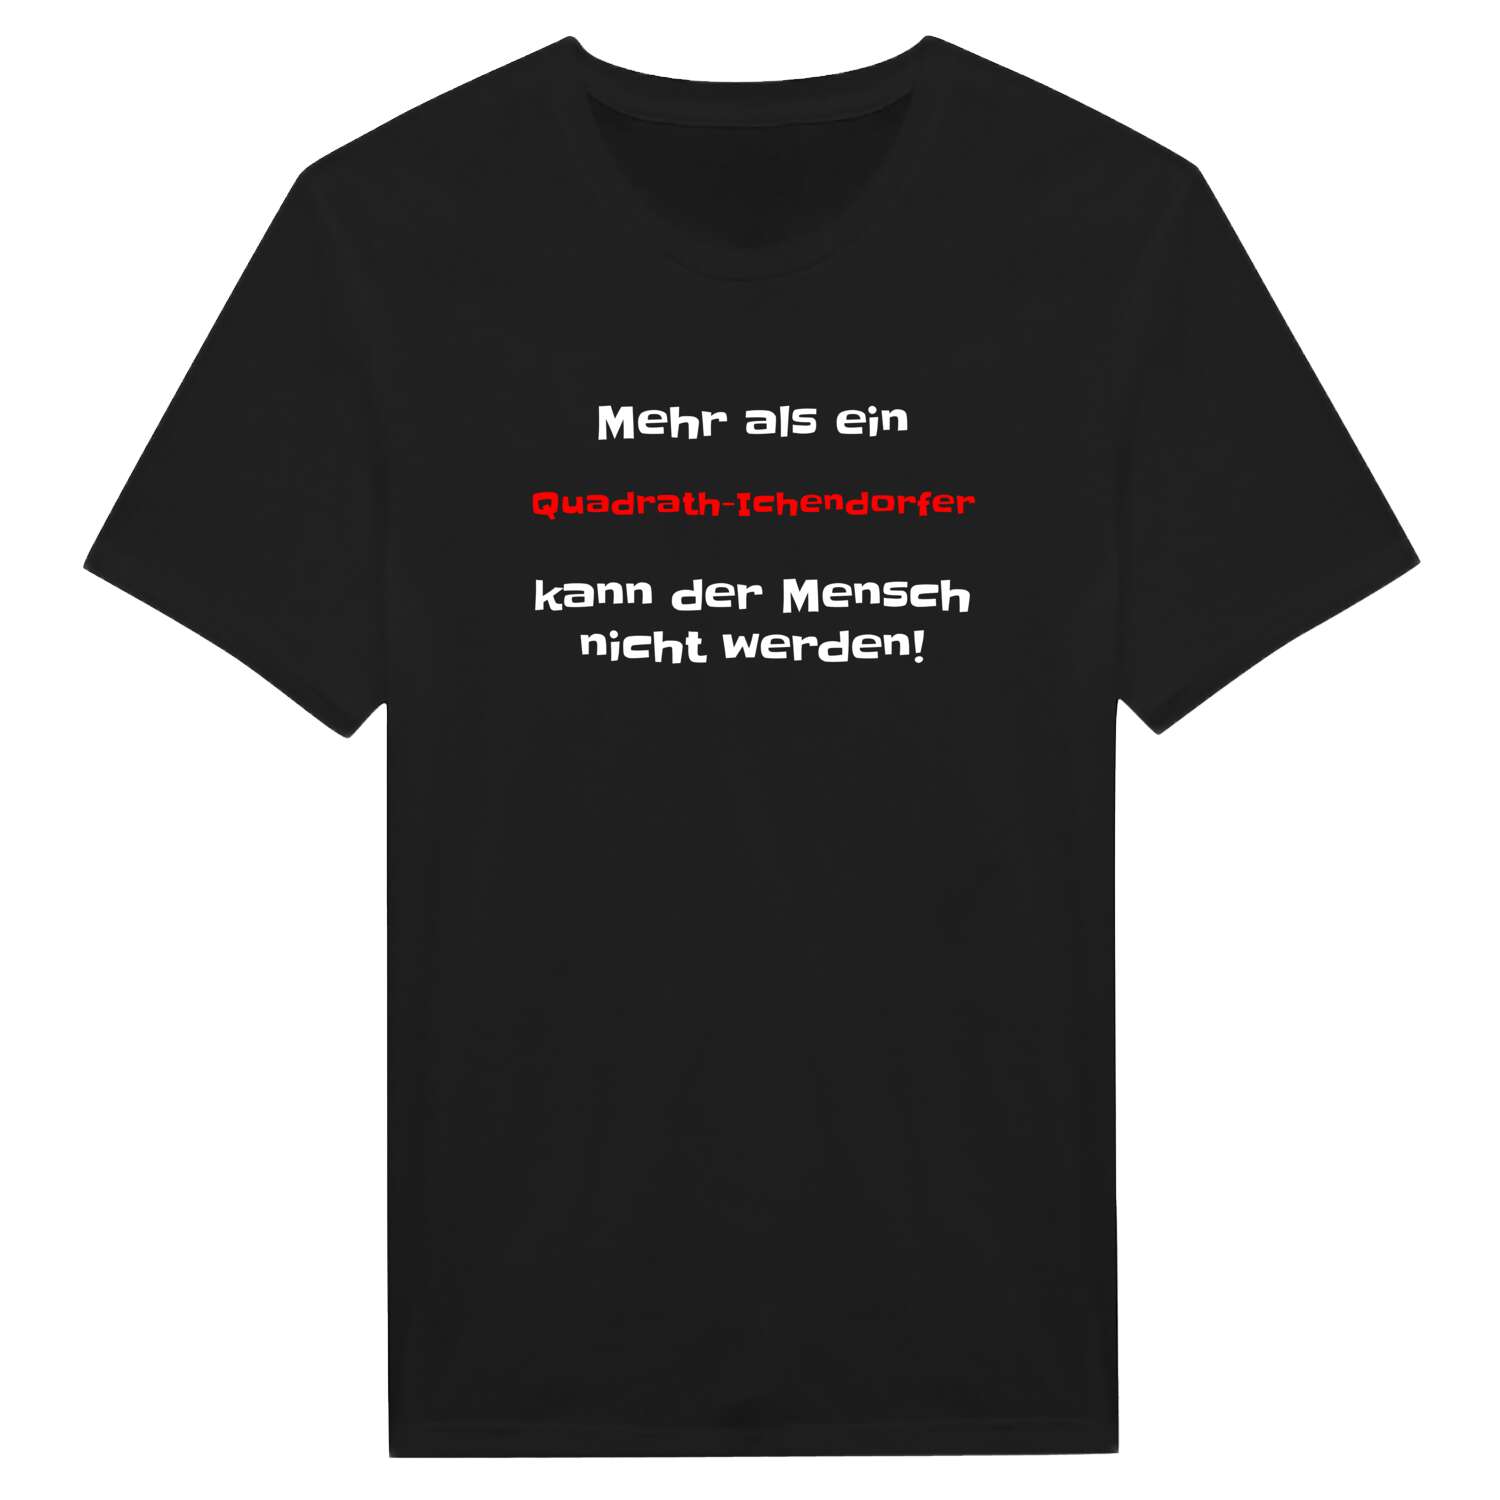 Quadrath-Ichendorf T-Shirt »Mehr als ein«